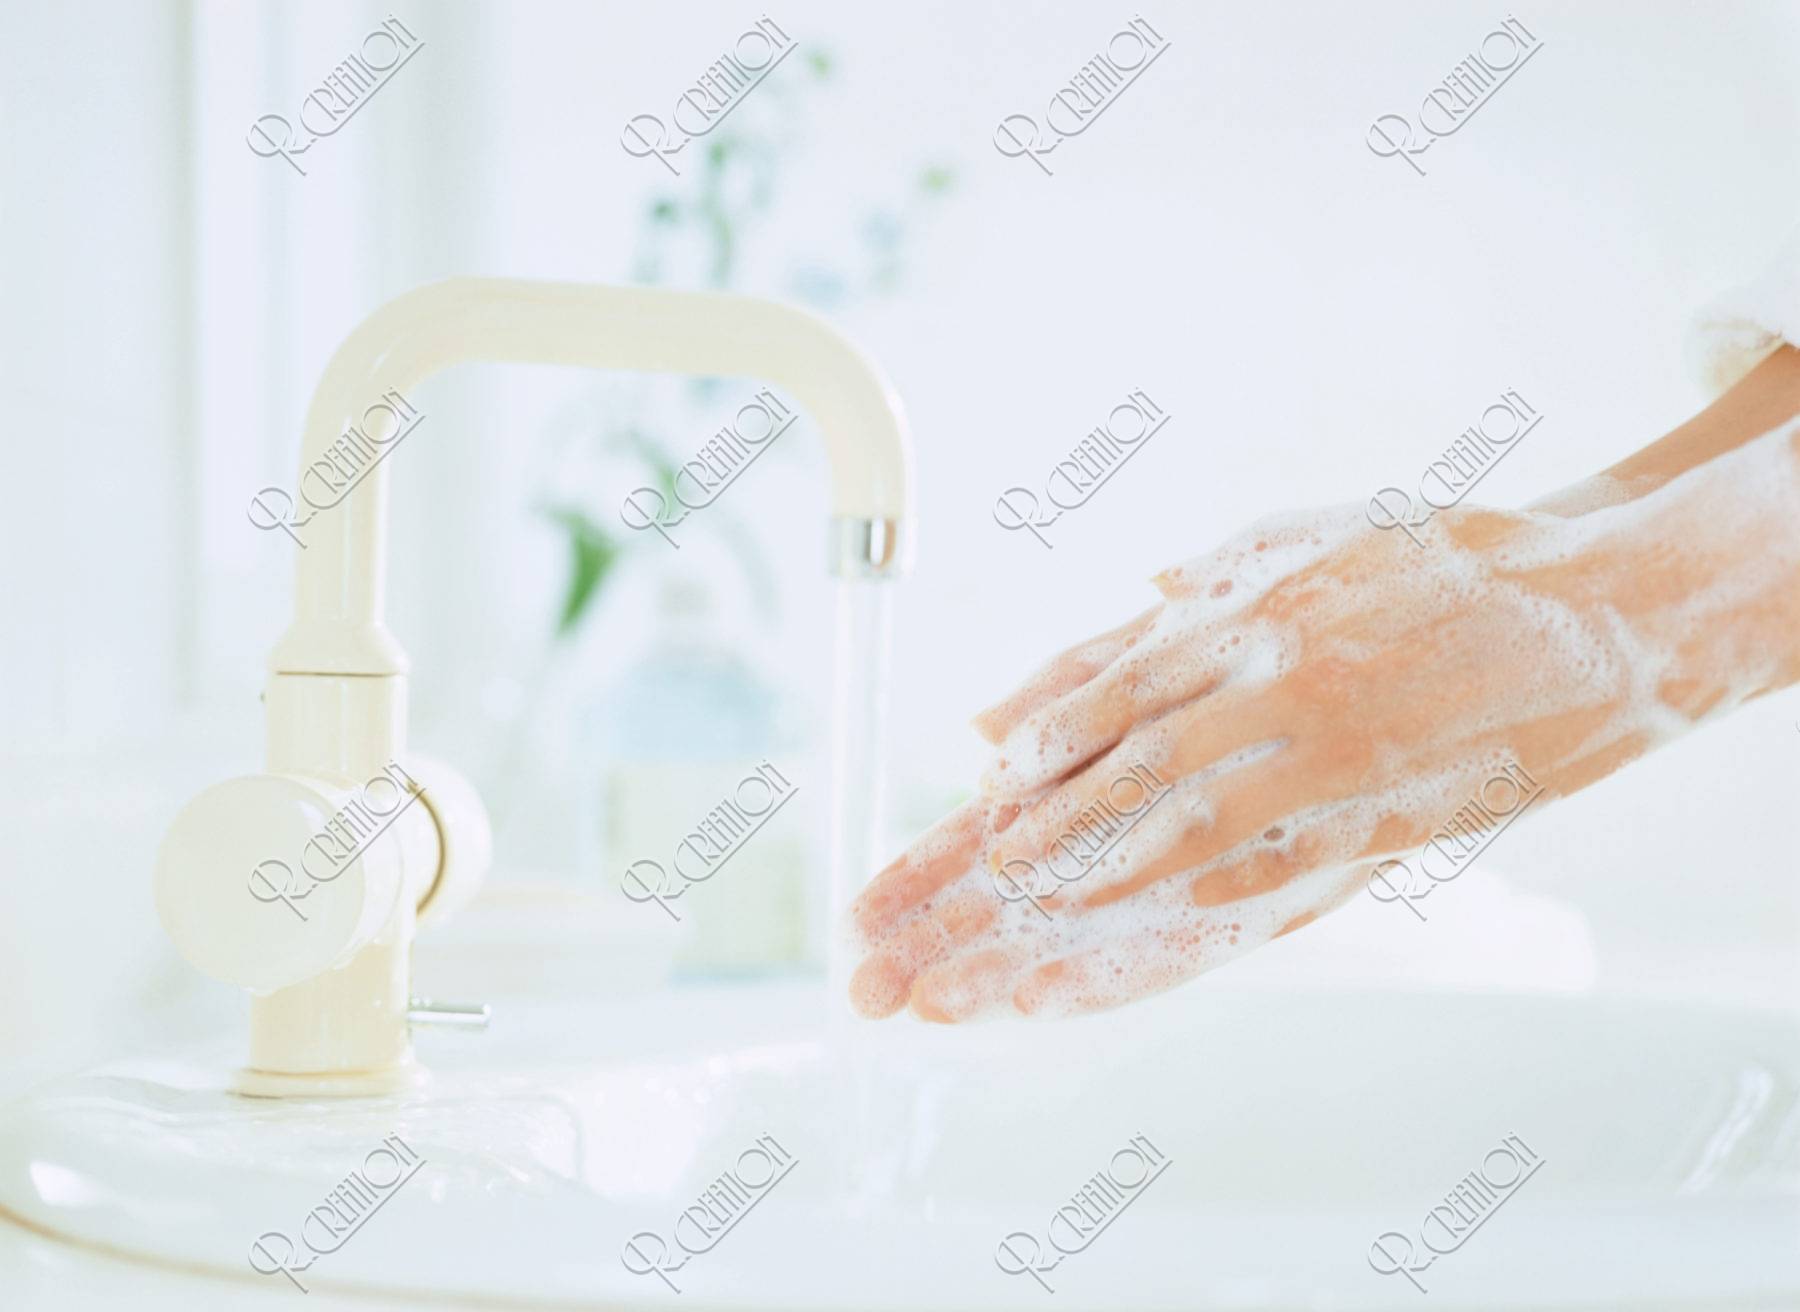 石鹸で洗う手